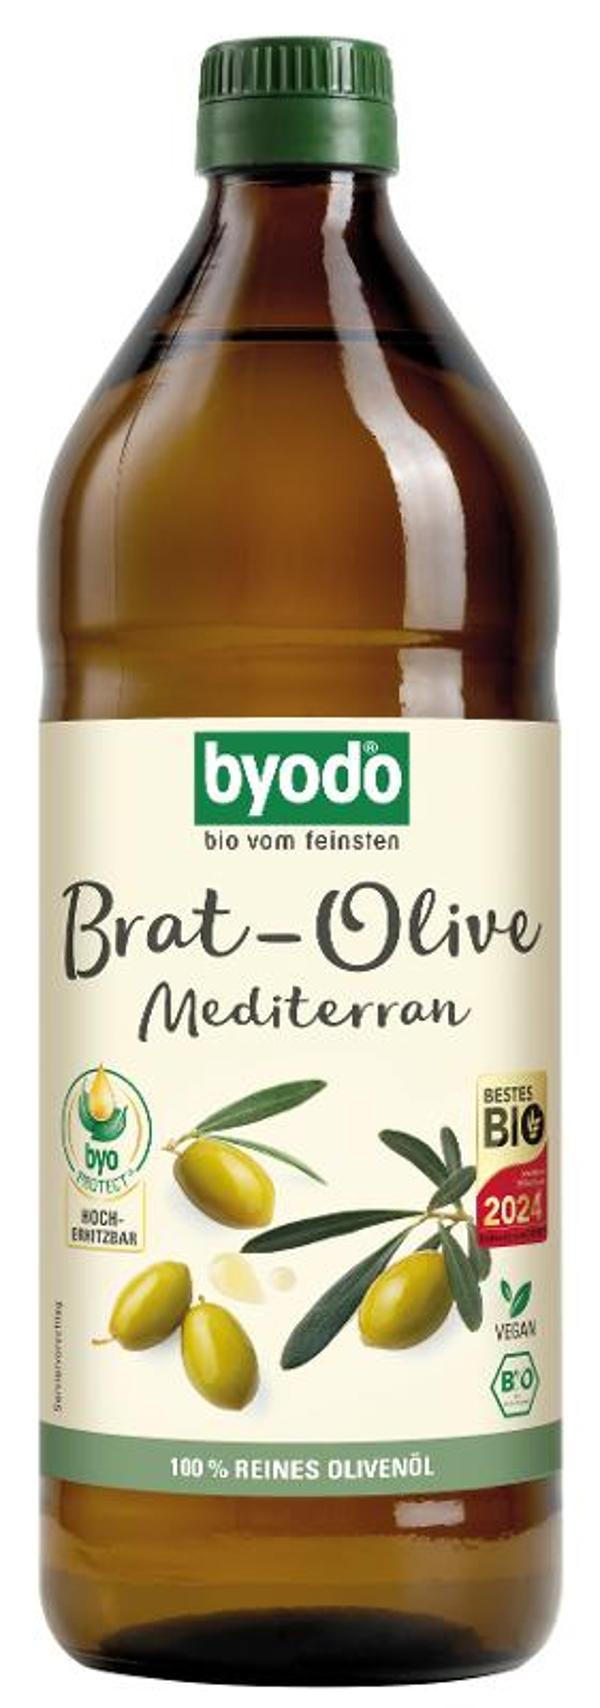 Produktfoto zu Brat-Olive Bratöl mediterran, 0,75l